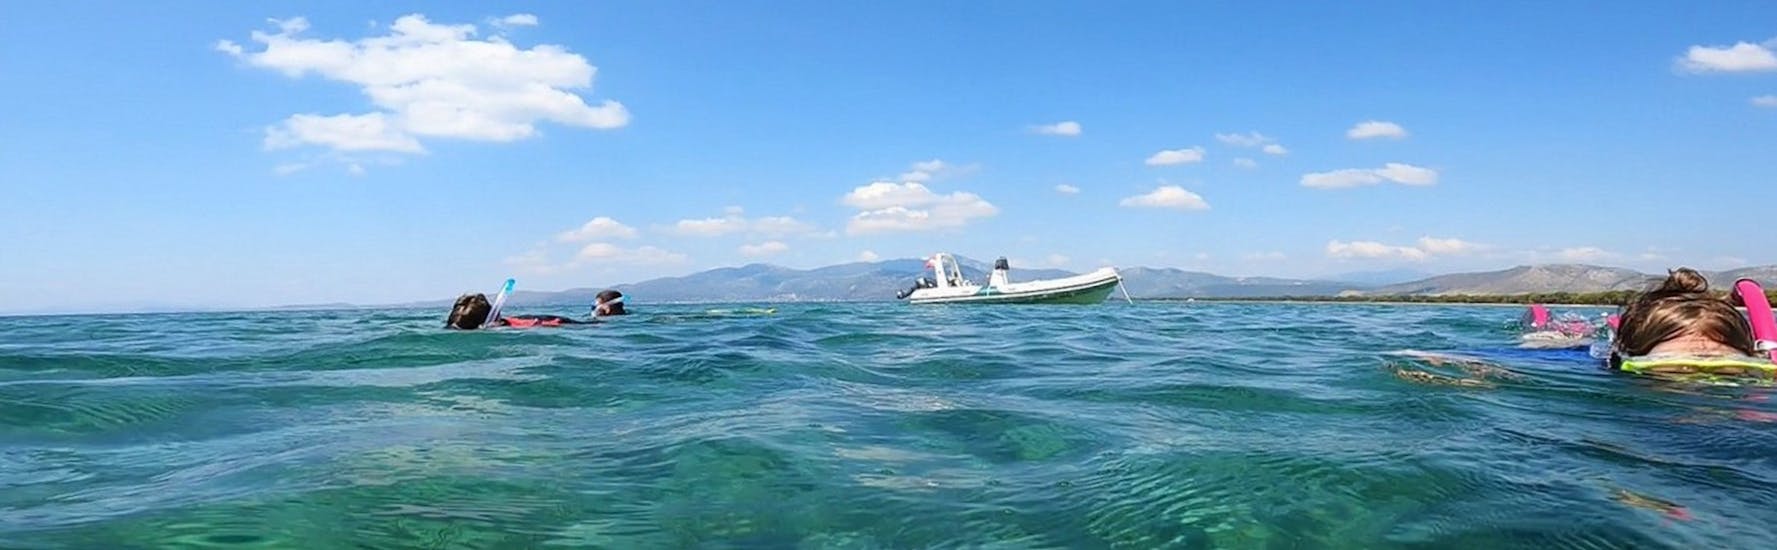 Barca in acqua durante lo snorkeling vicino ad Atene - Nea Makri ospitato da Kanelakis Diving Experiences.